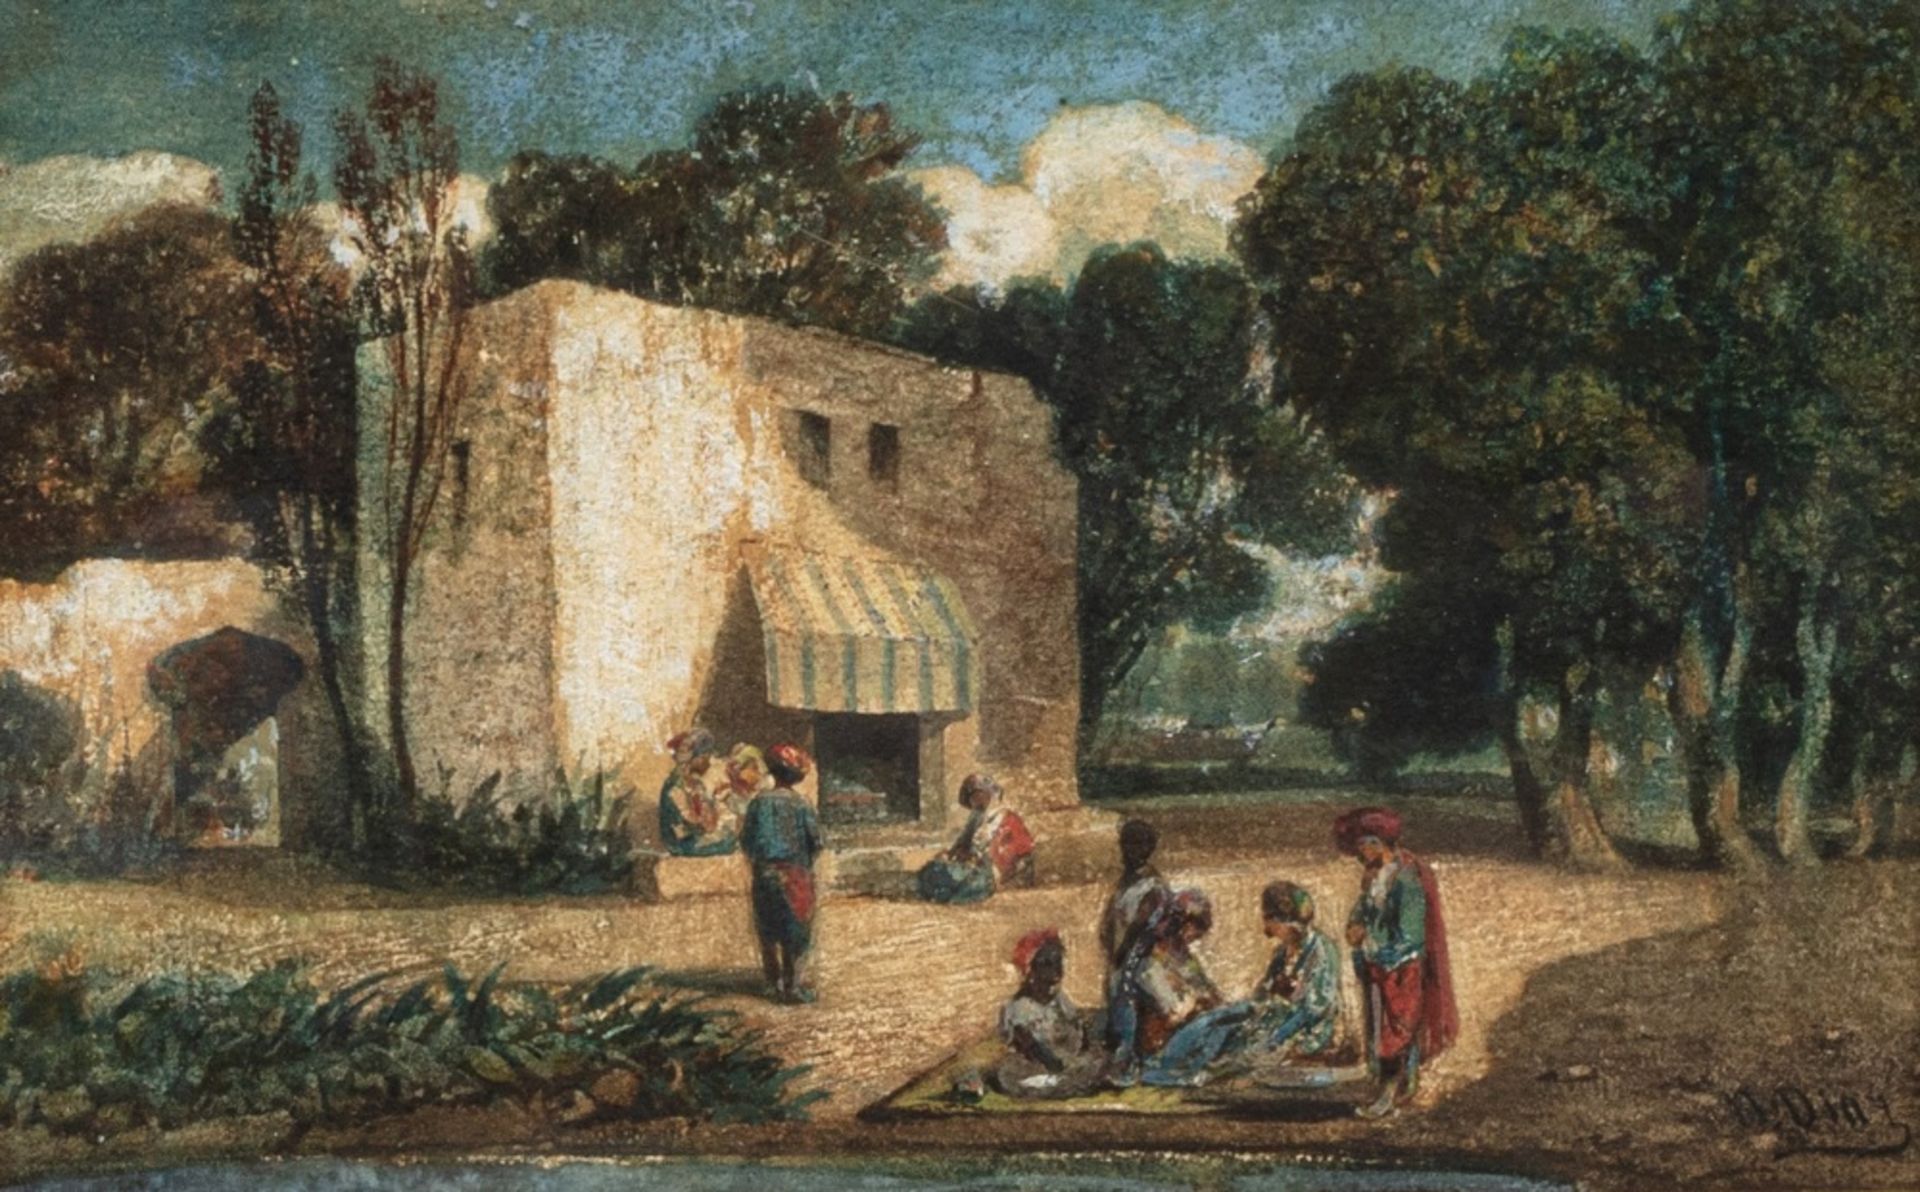 Narcisse Virgile DIAZ DE LA PENA (Bordeaux 1807-Menton 1876)Scène orientaleAquarelle 14 x 22,5 cm